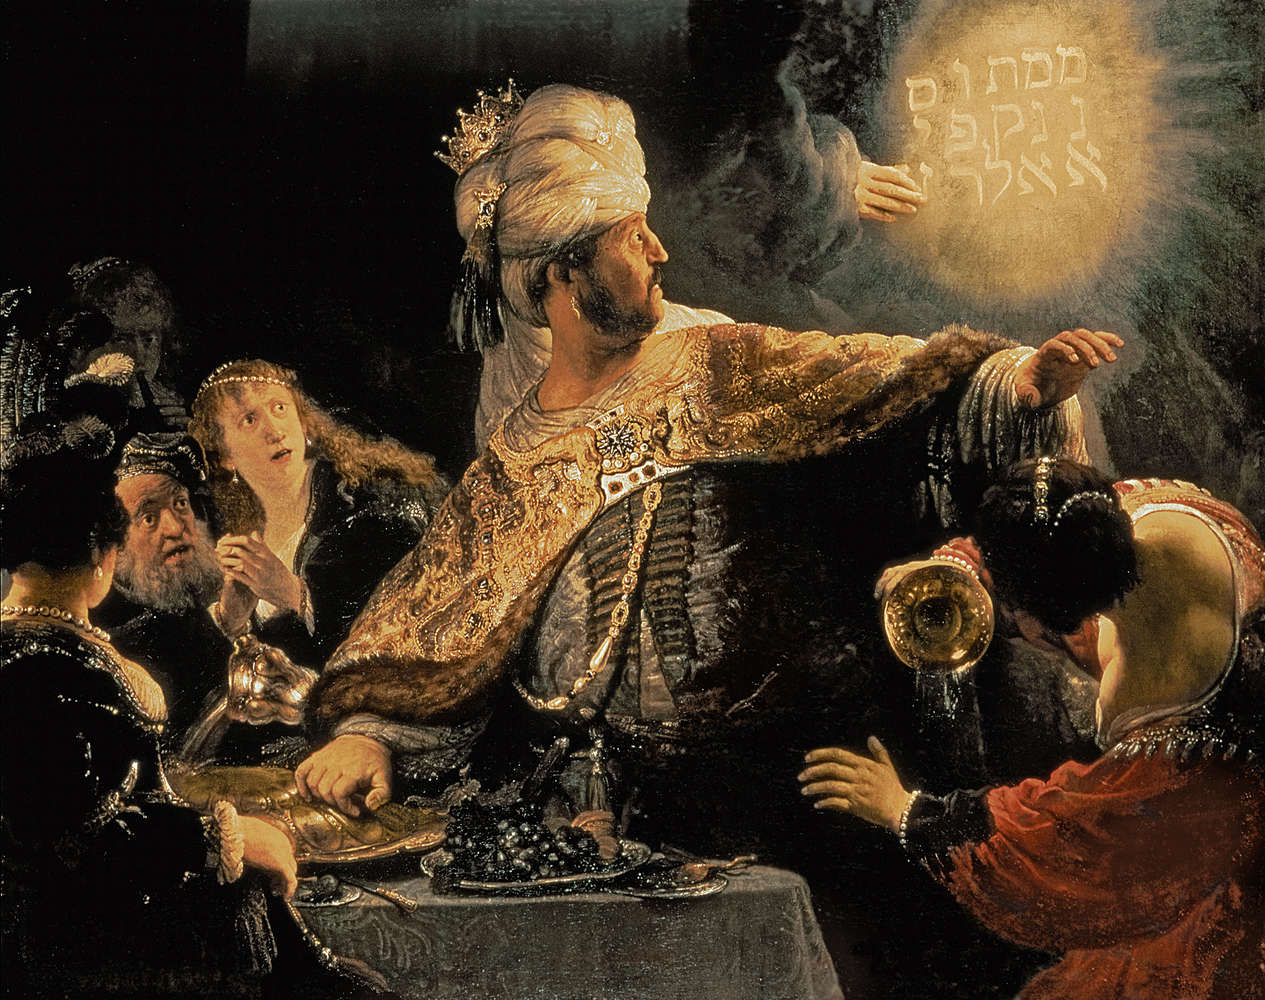             Het feest van Belsassar" muurschildering door Rembrandt van Rijn
        